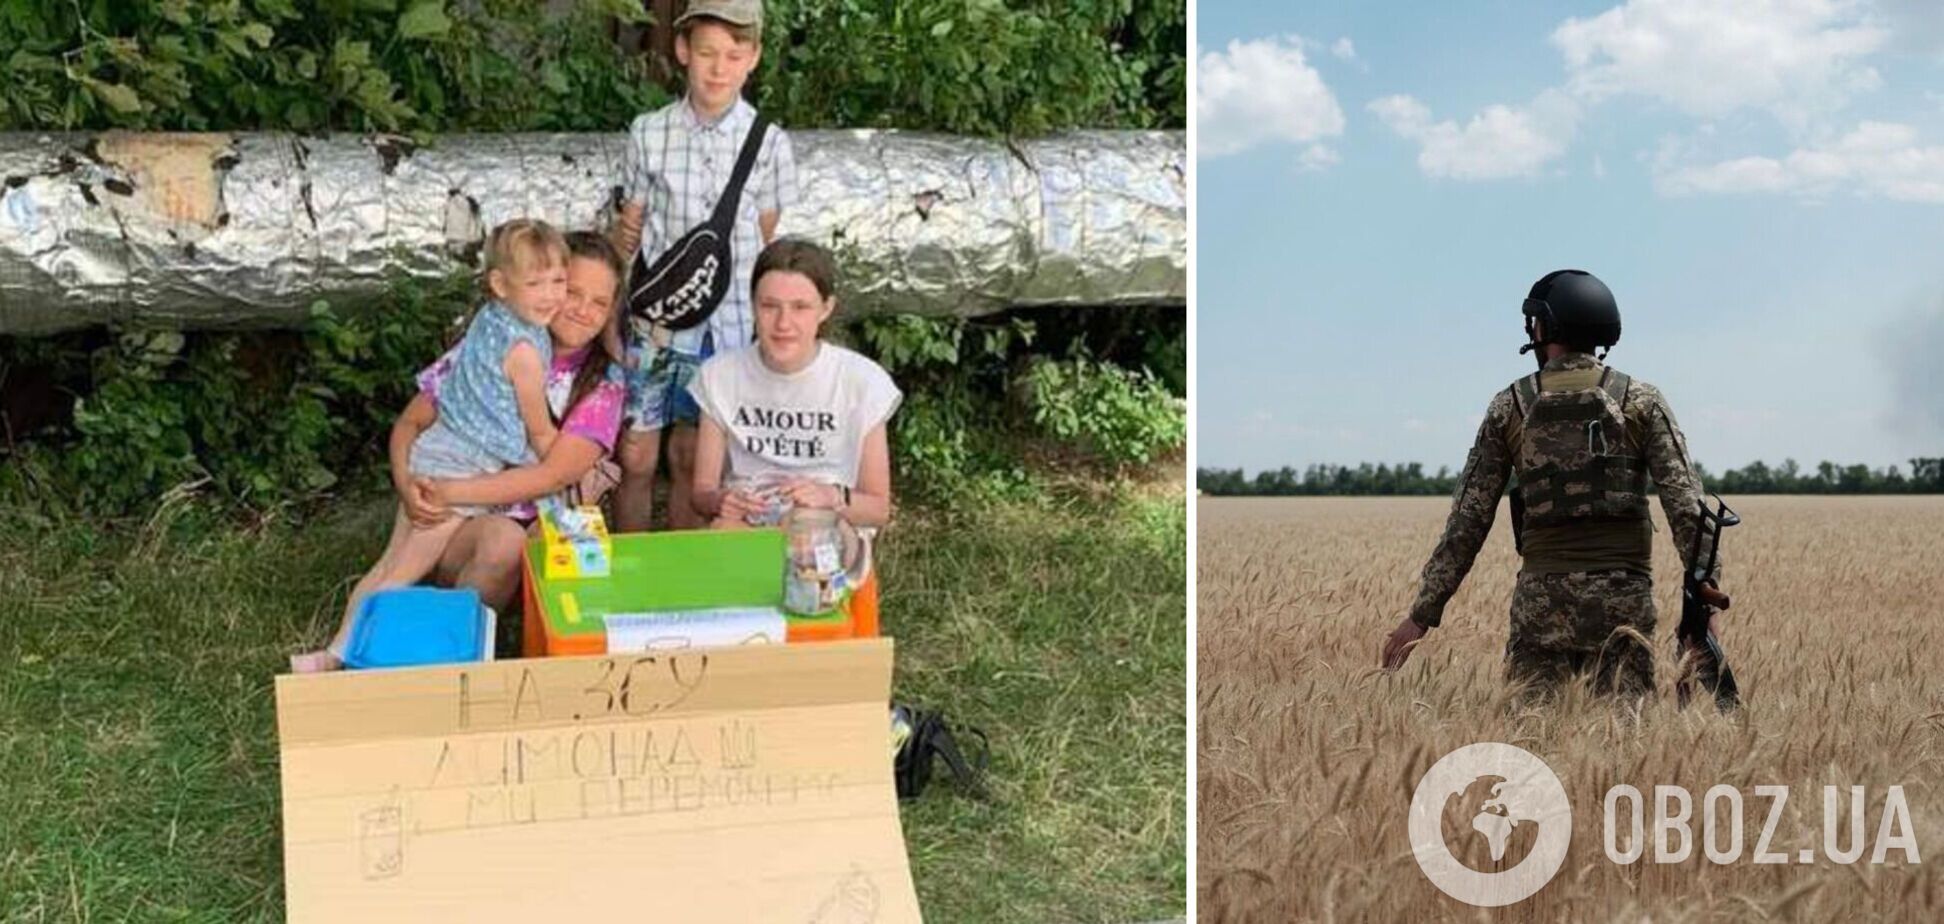 Во Львове дети собрали на помощь защитникам Украины 8 тыс. грн: торговали лимонадом. Фото